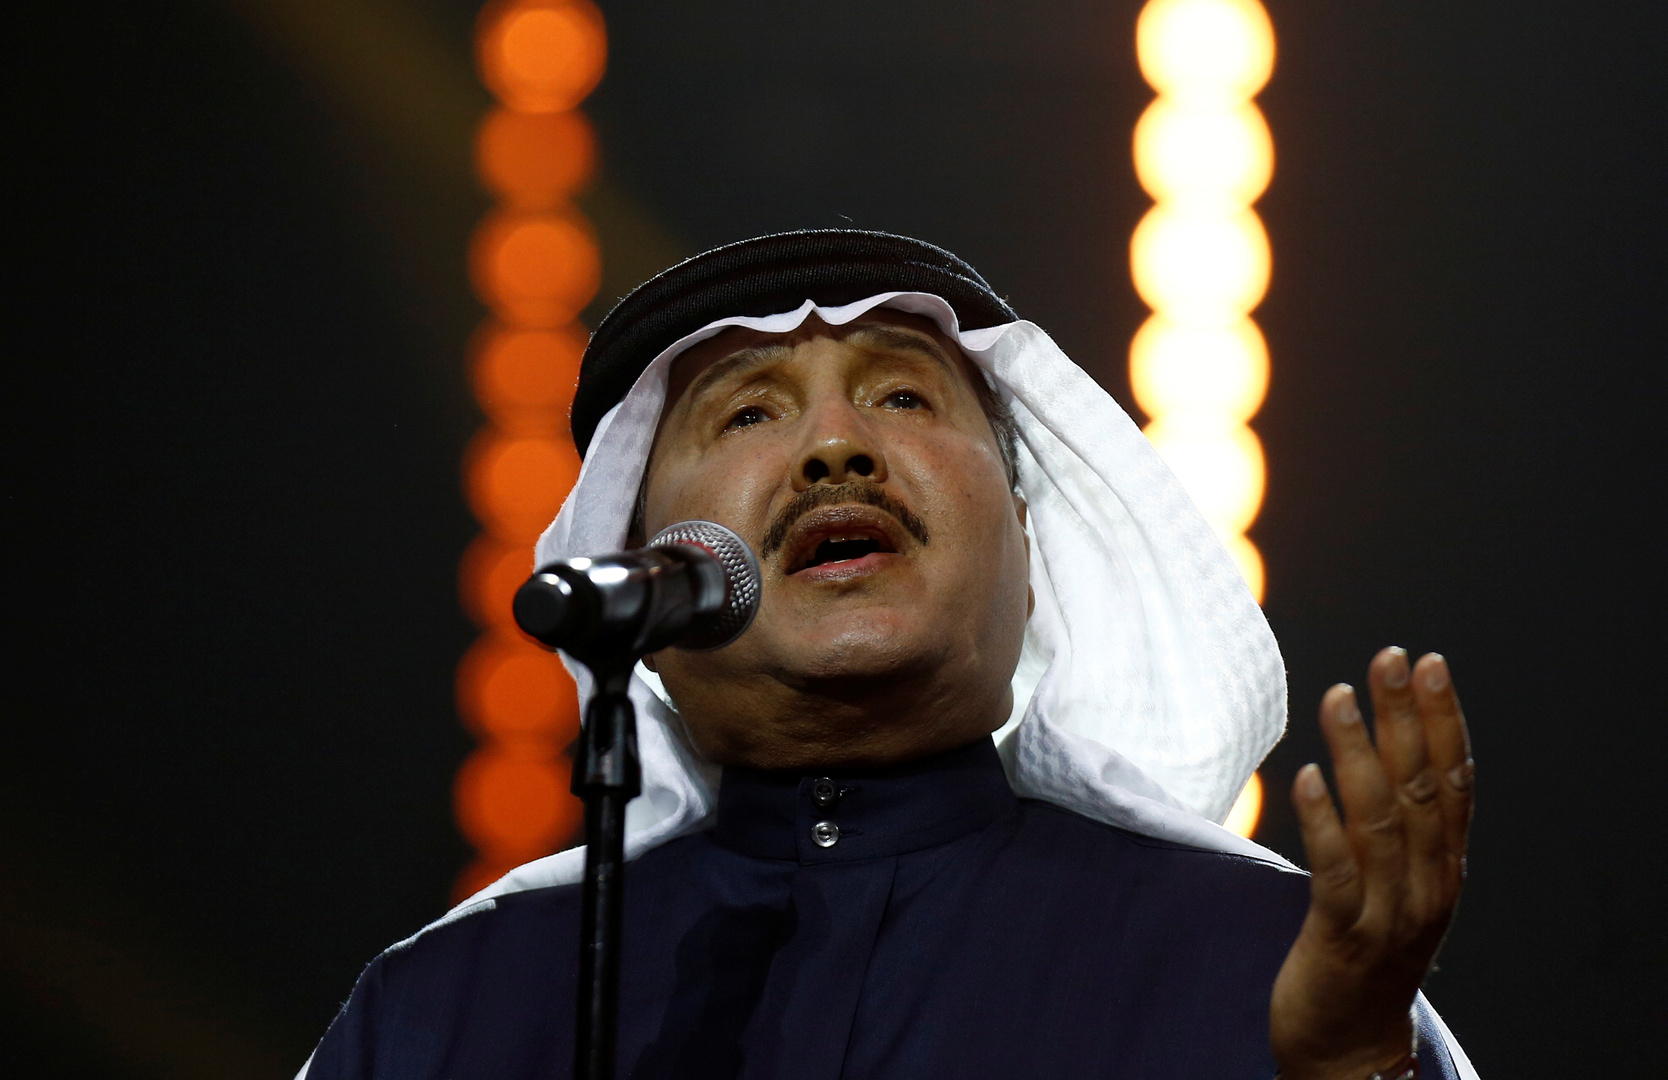 محمد عبده وهو يغني في إحدى الحفلات